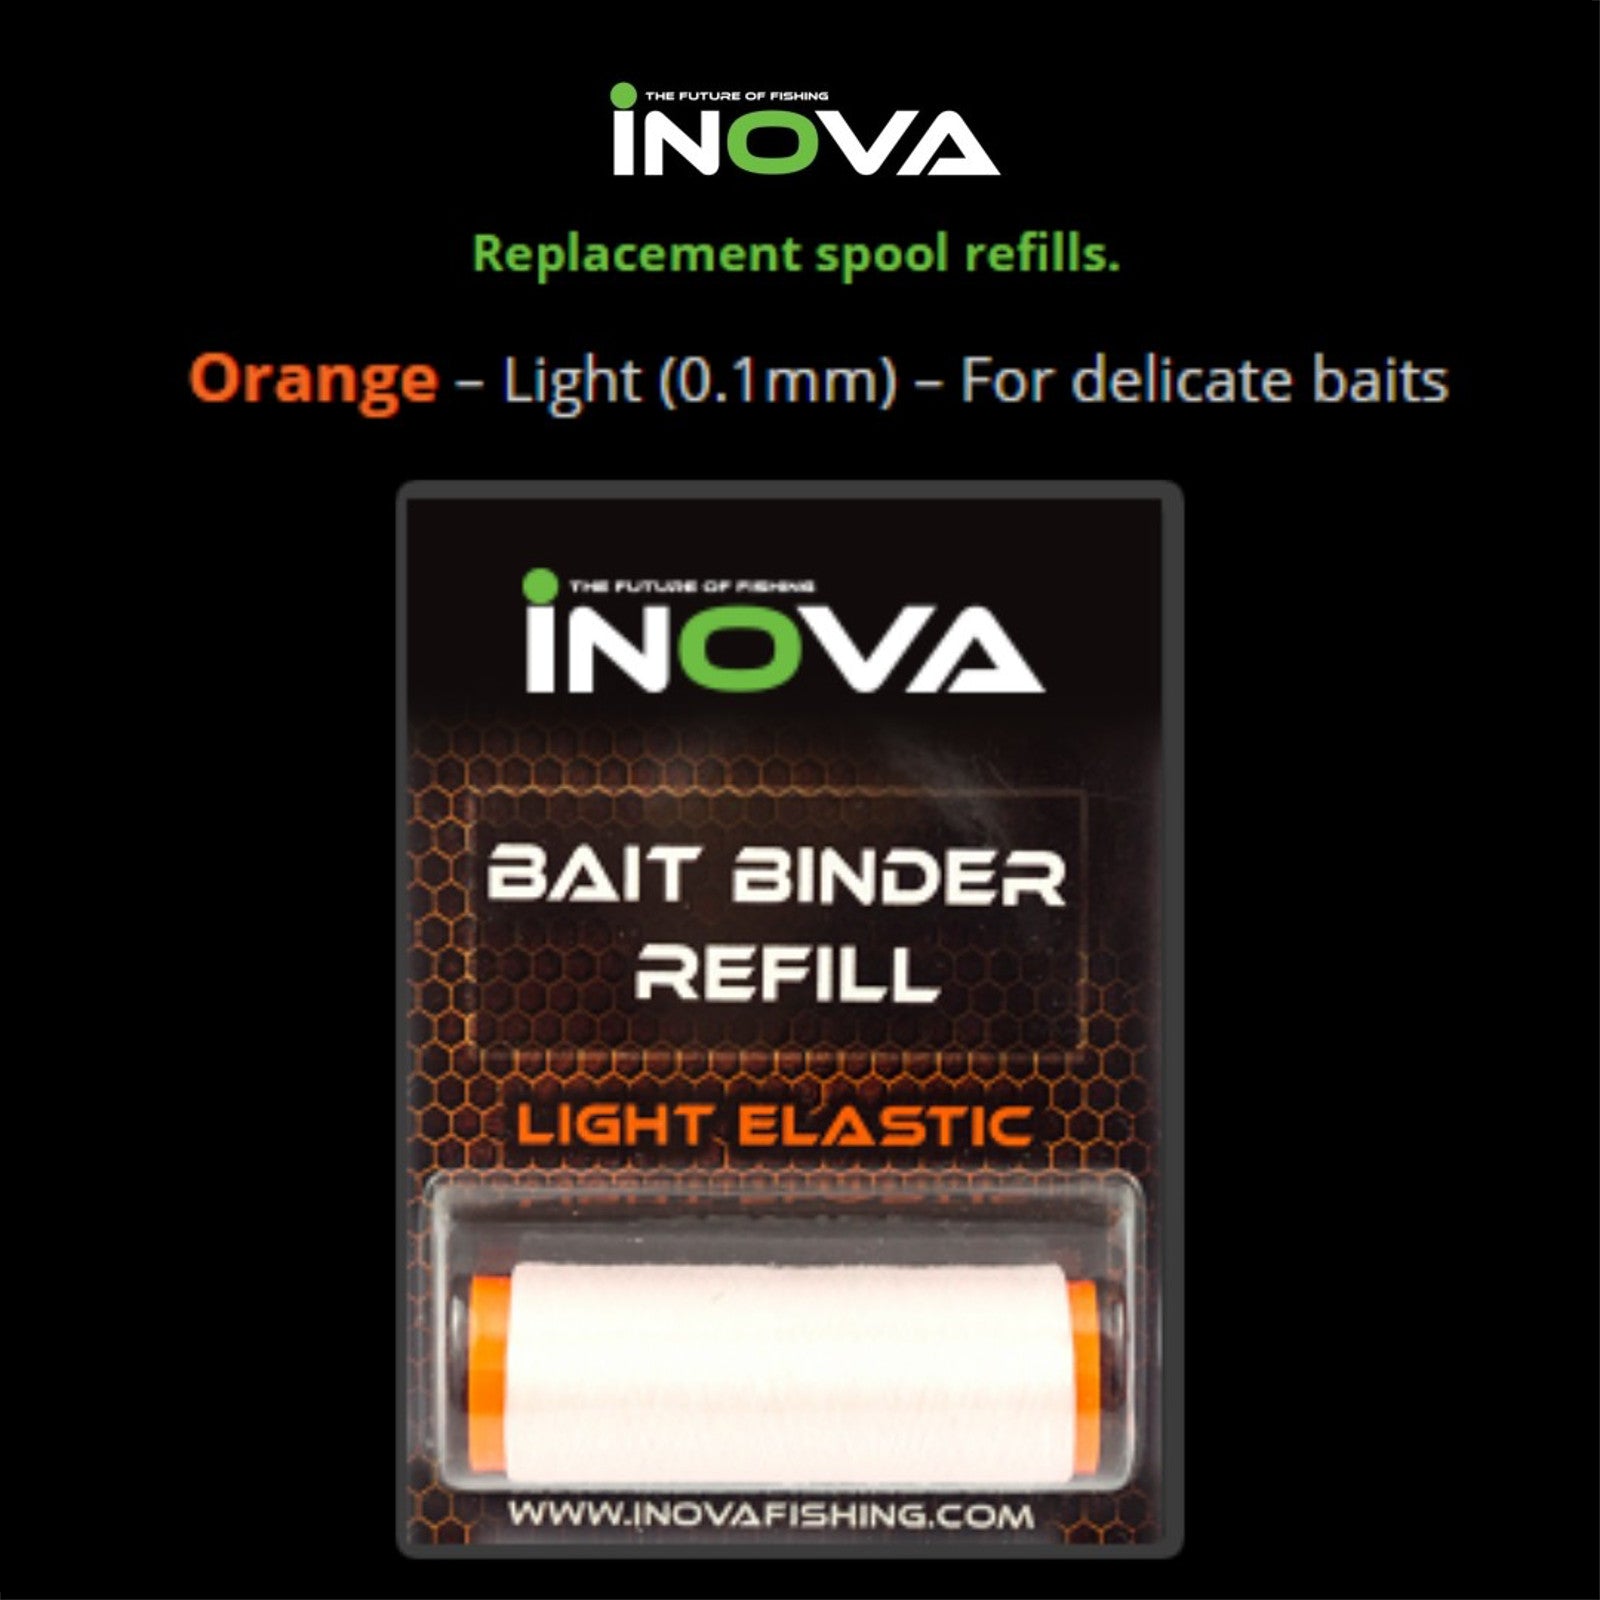 Inova Ullcatch Binder Refill Light